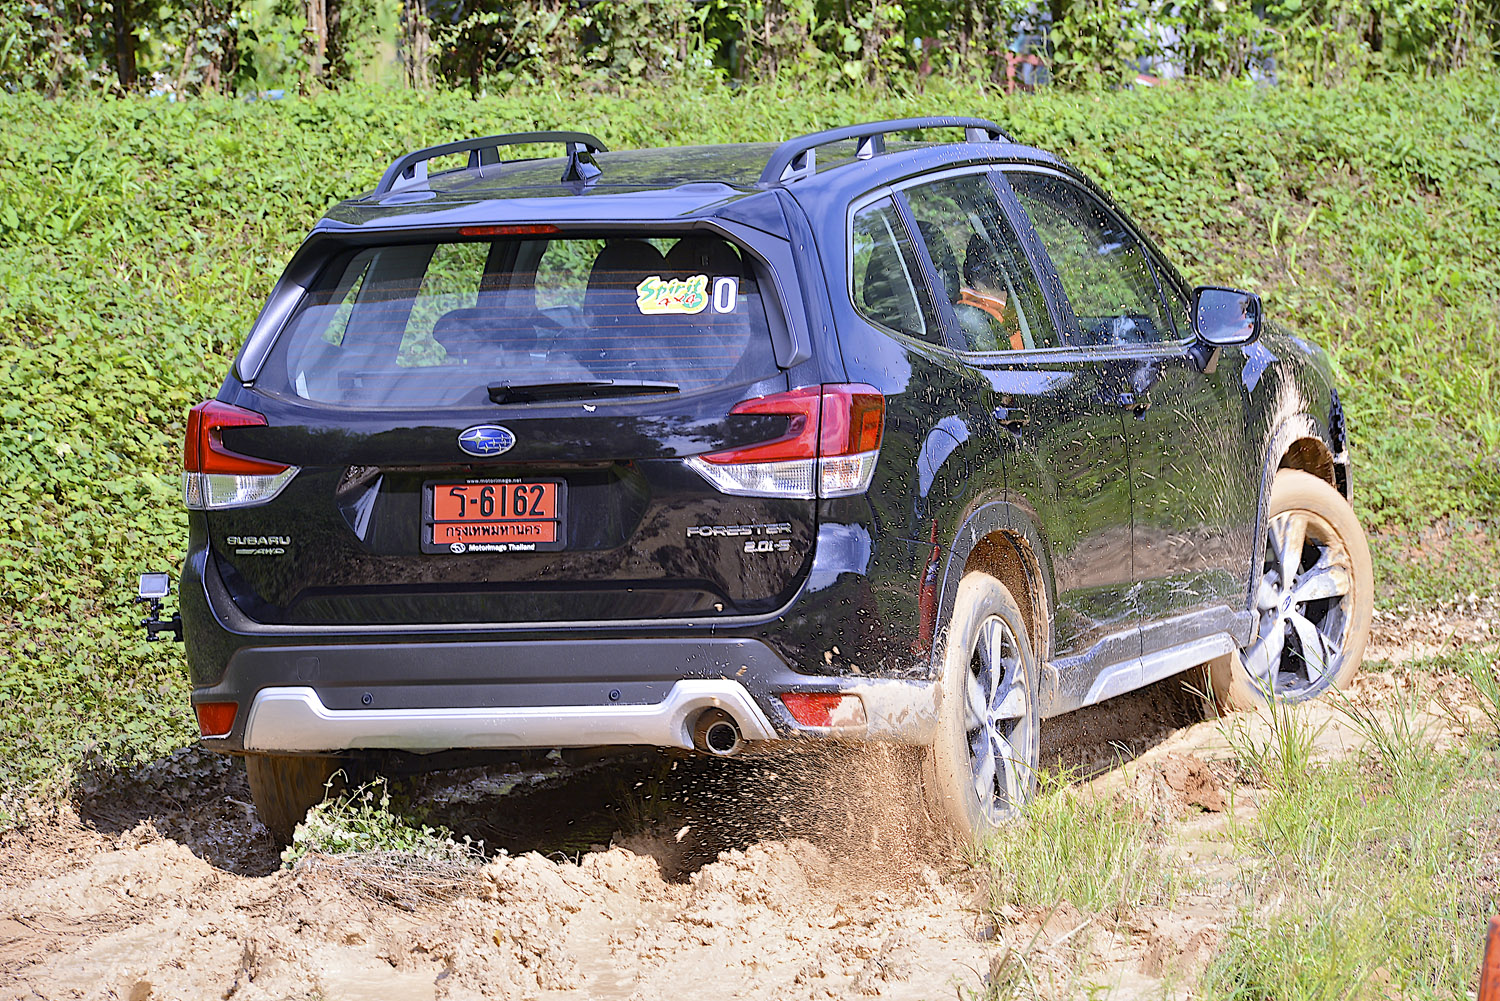 Subaru มั่นใจ “Spirit 4x4” ส่งสมาชิกฝึกอบรมขับขี่รถขับเคลื่อน 4 ล้อ